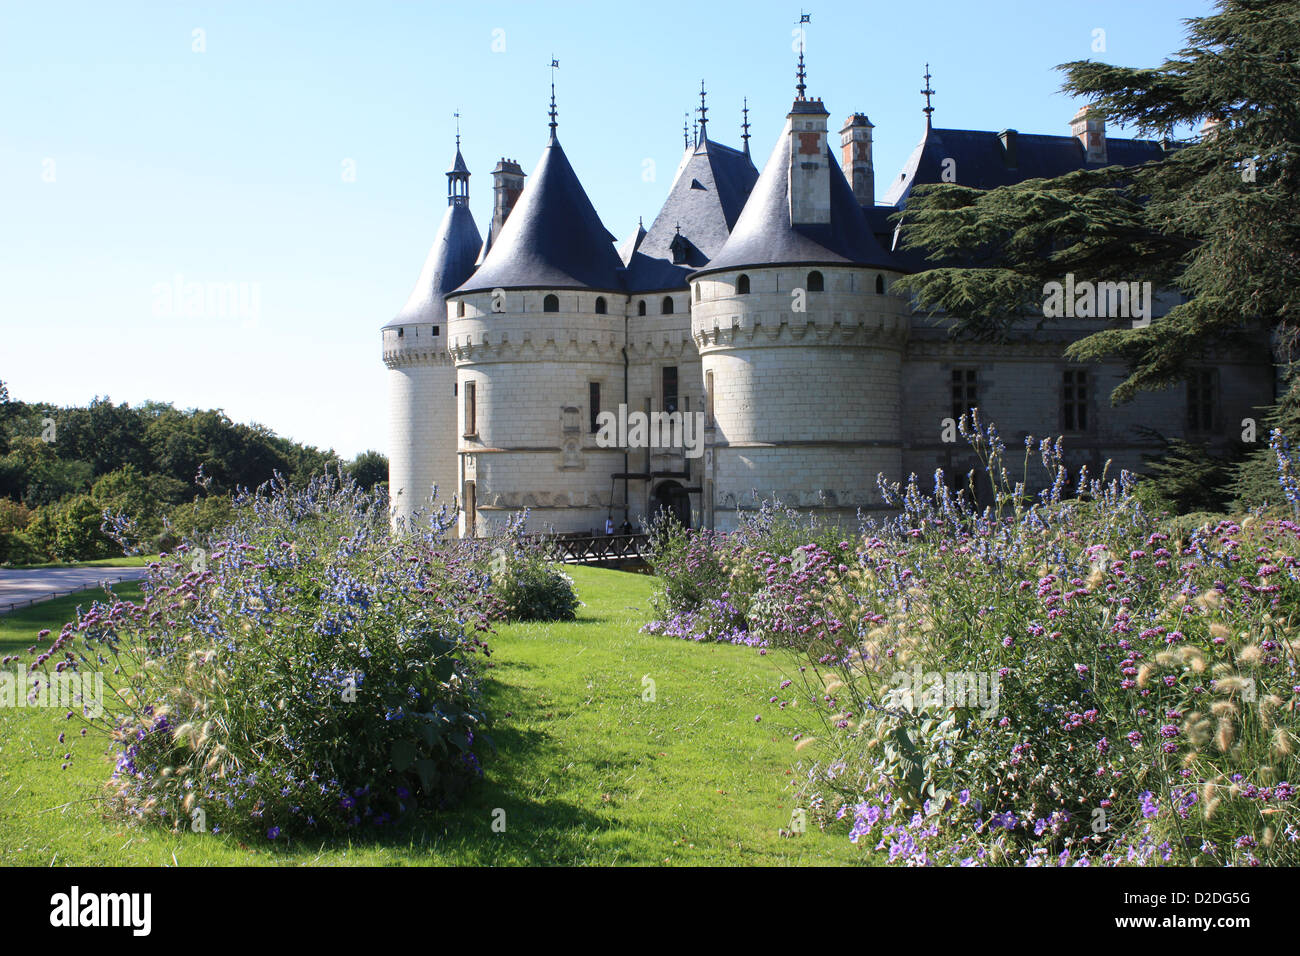 Chateau of Chaumont-sur-Loire, Loire Valley, France Stock Photo